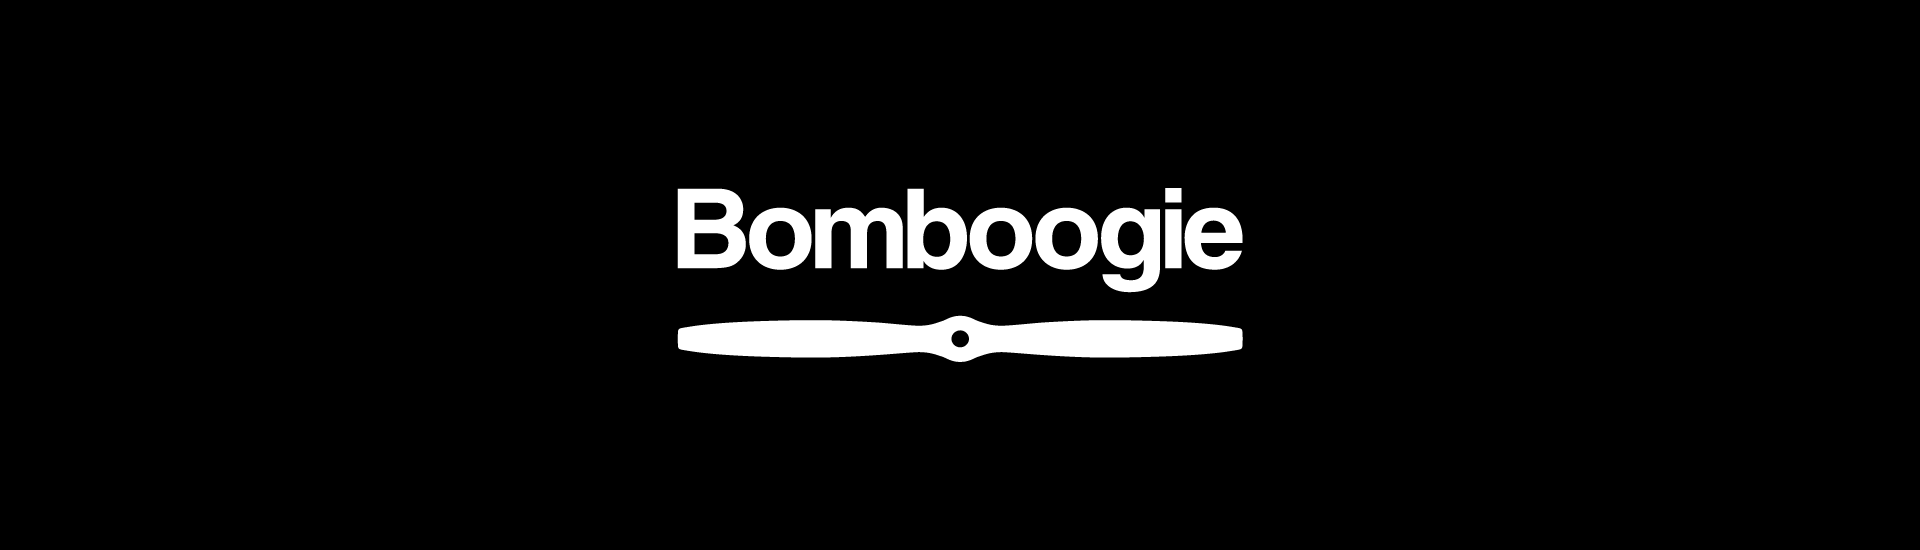 E-commerce per il fashion luxury: il caso Bomboogie